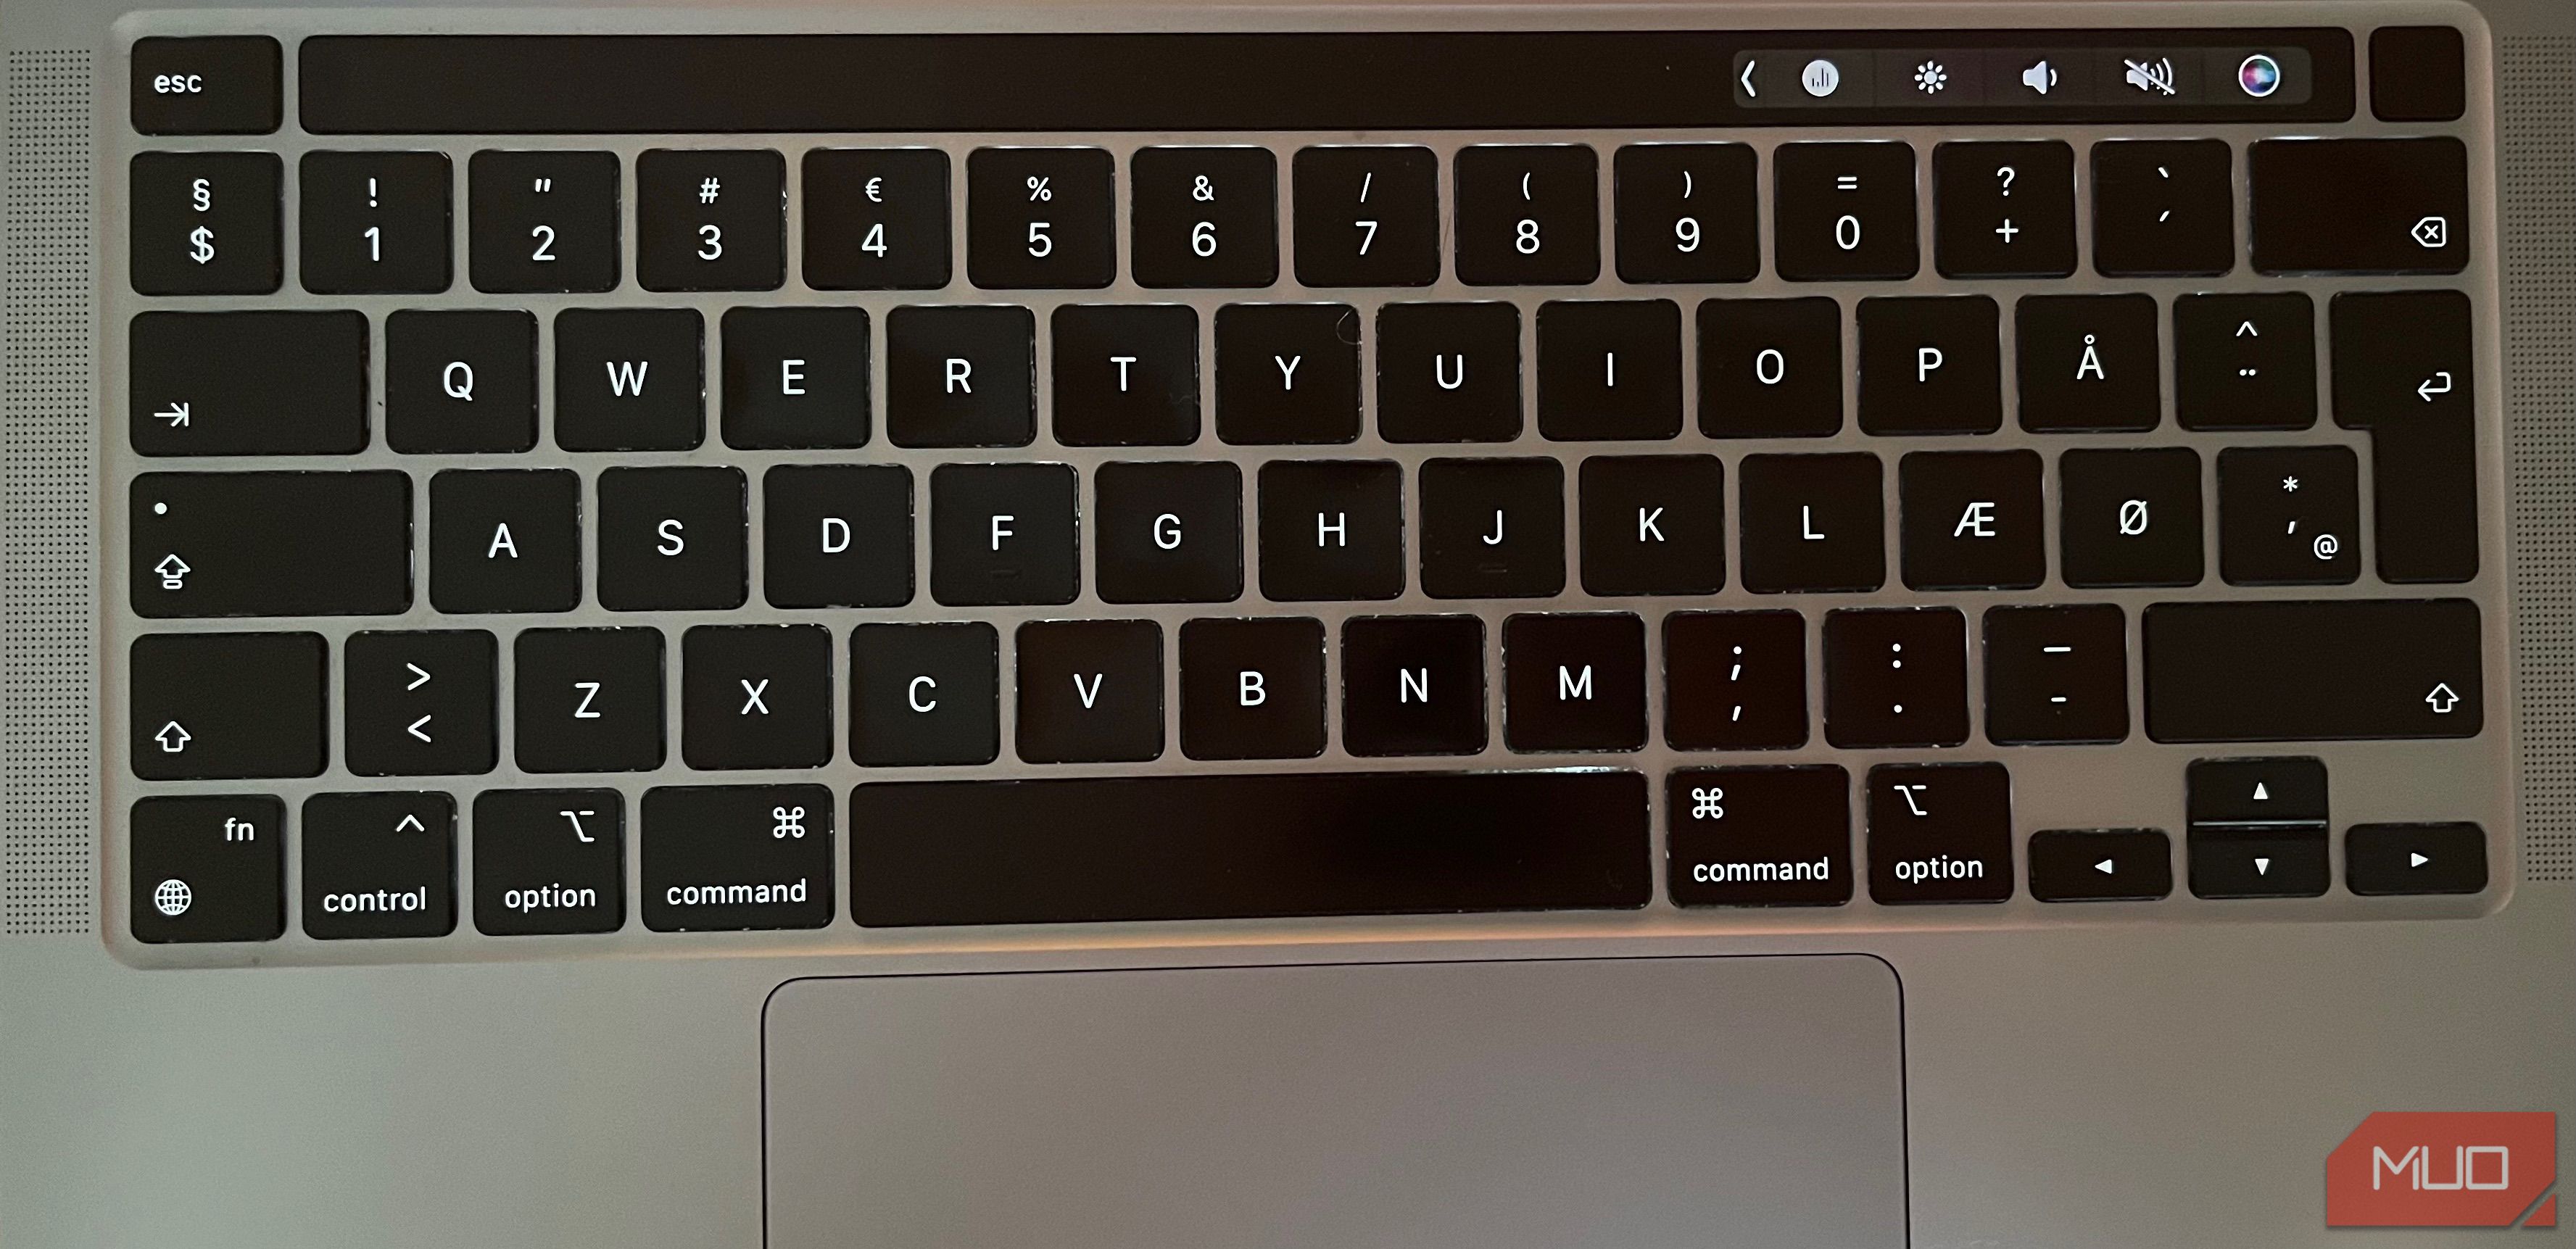 Mac Option Keys Appearing on a Keyboard